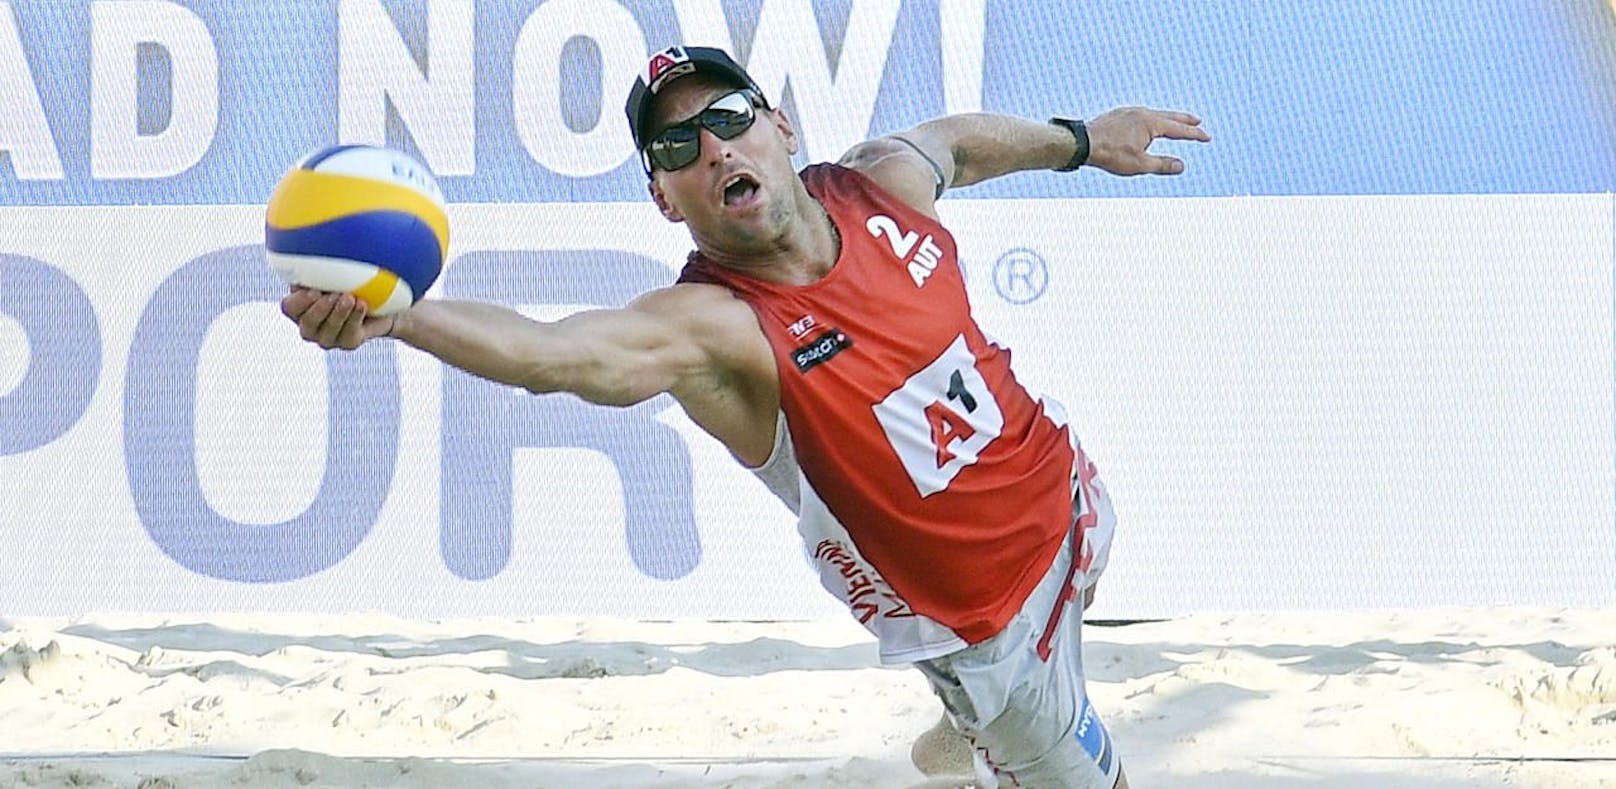 Beach-Volleyballer Horst punktet mit Fallrückzieher